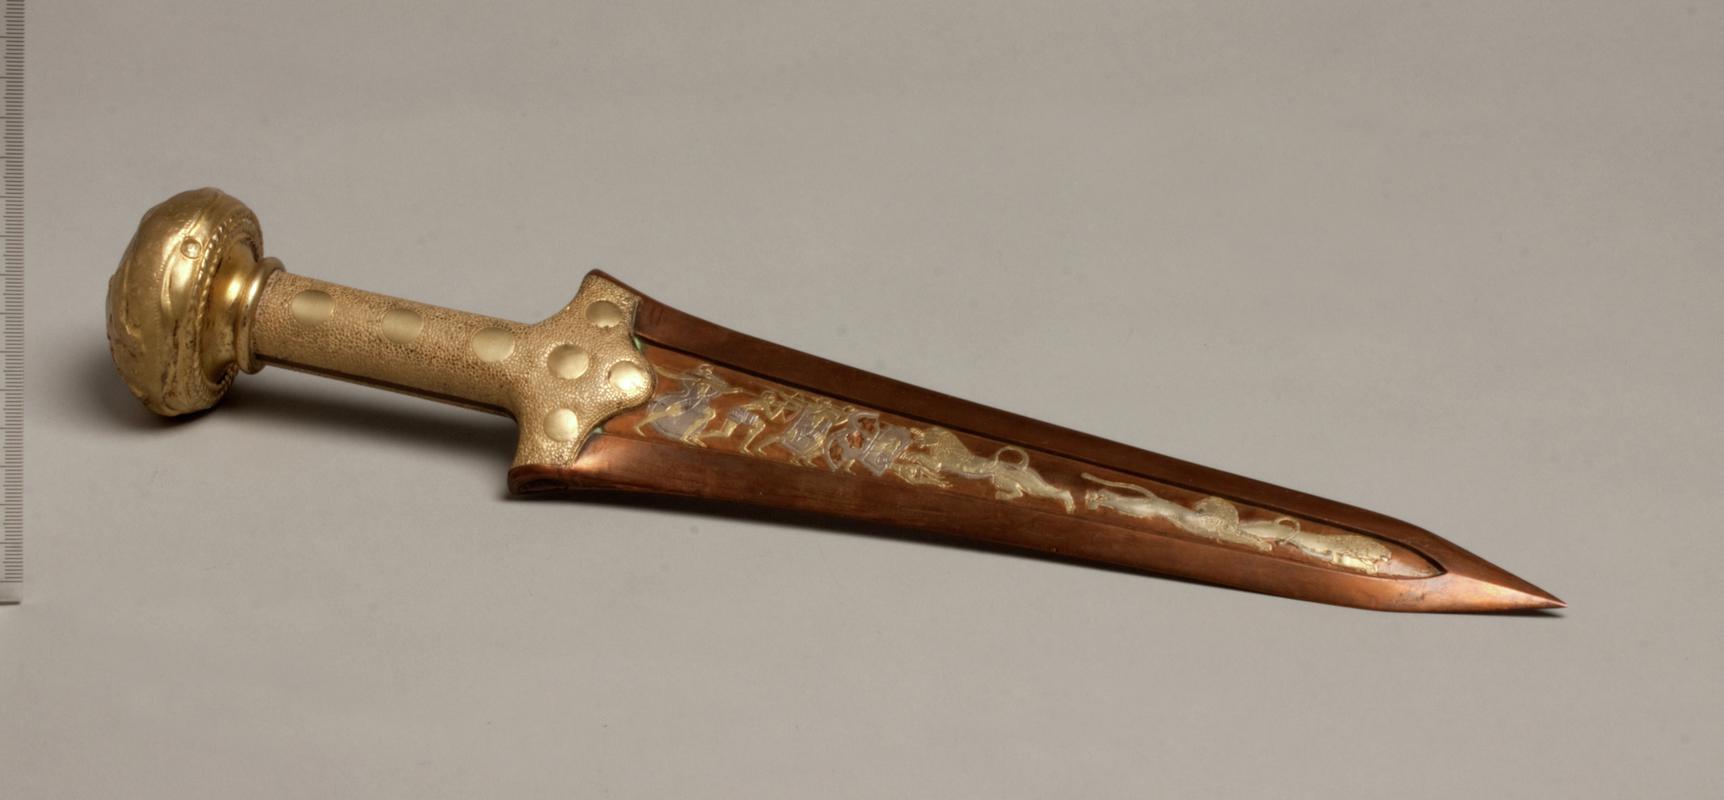 Replica Bronze Age dagger depicting a lion hunting scene